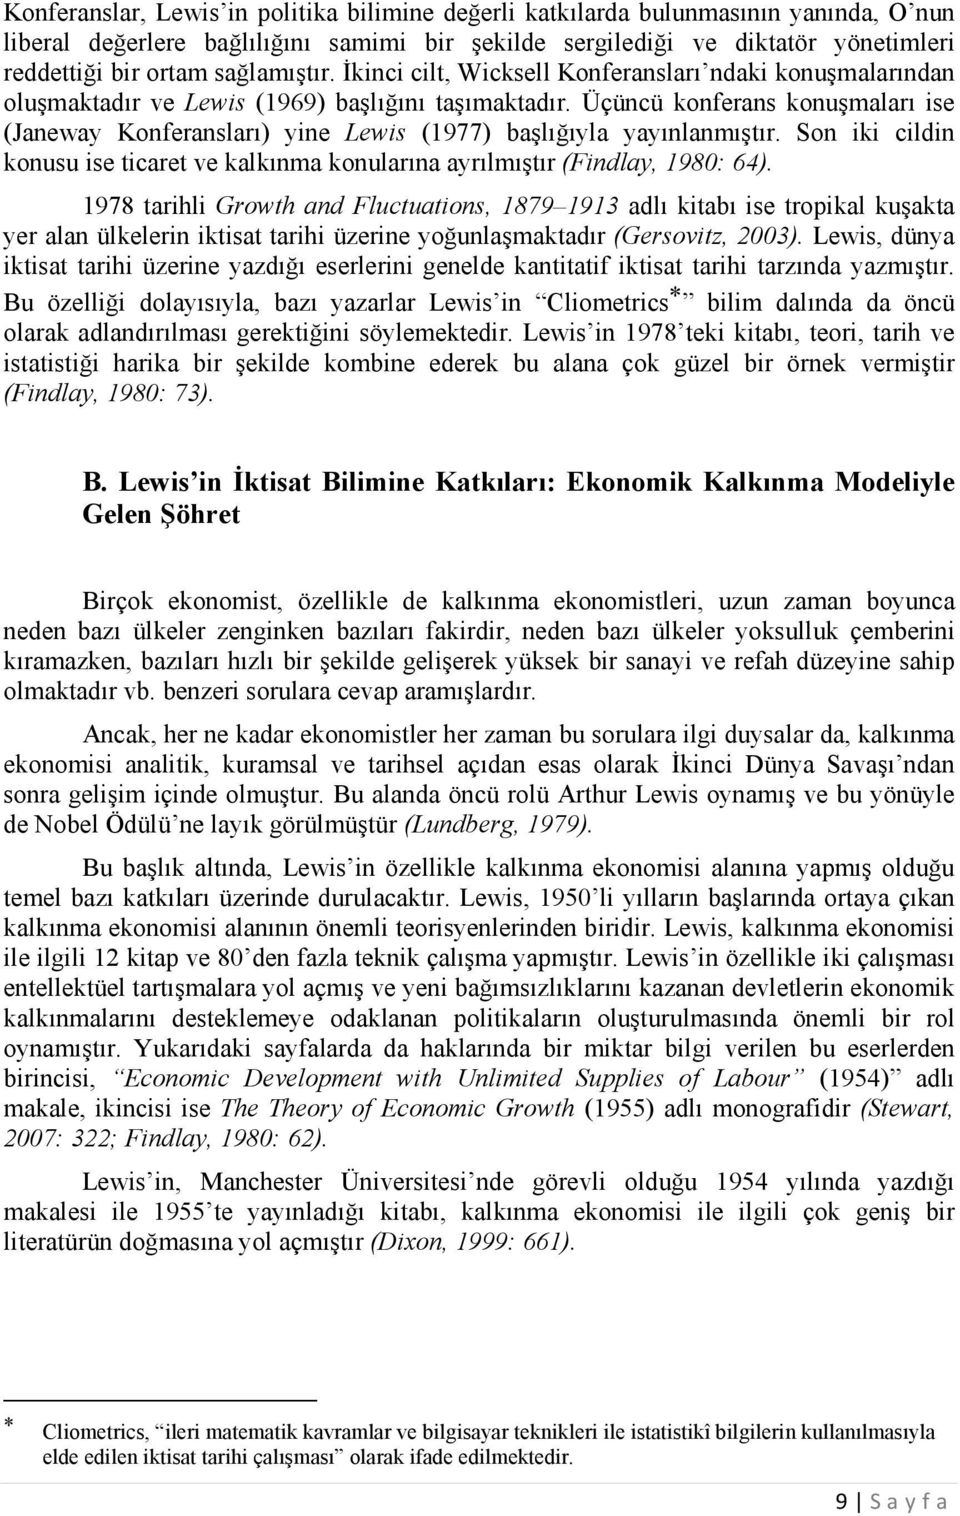 Üçüncü konferans konuşmaları ise (Janeway Konferansları) yine Lewis (1977) başlığıyla yayınlanmıştır. Son iki cildin konusu ise ticaret ve kalkınma konularına ayrılmıştır (Findlay, 1980: 64).